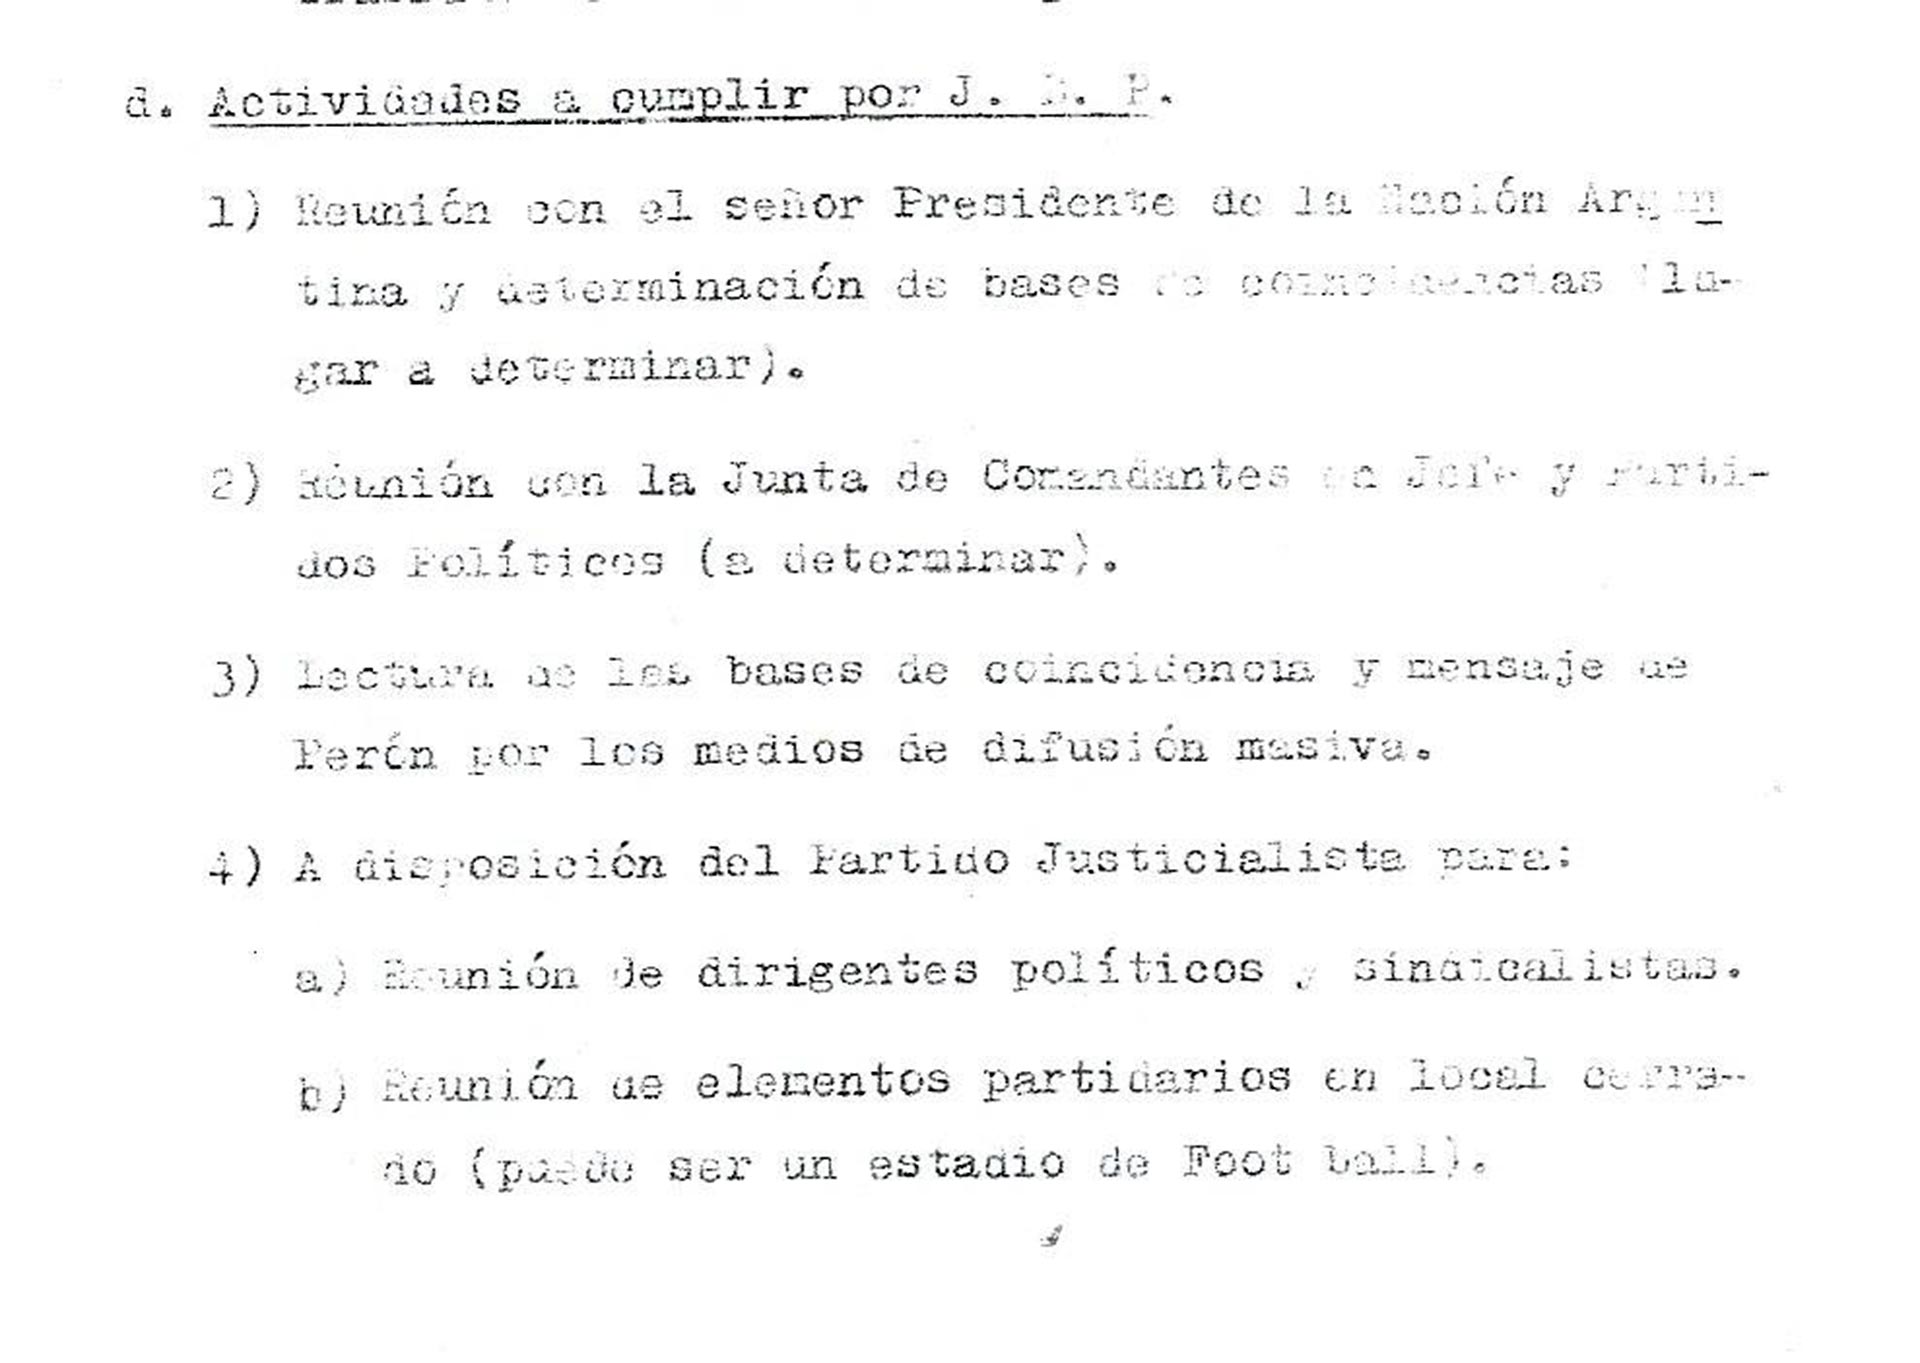 Uno de los tantos borradores de actividades que la Junta Militar tenía para la estadía de Perón en la Argentina y que no fue tenido en cuenta. Entre esas actividades se contemplaba analizar las “bases de coincidencias”